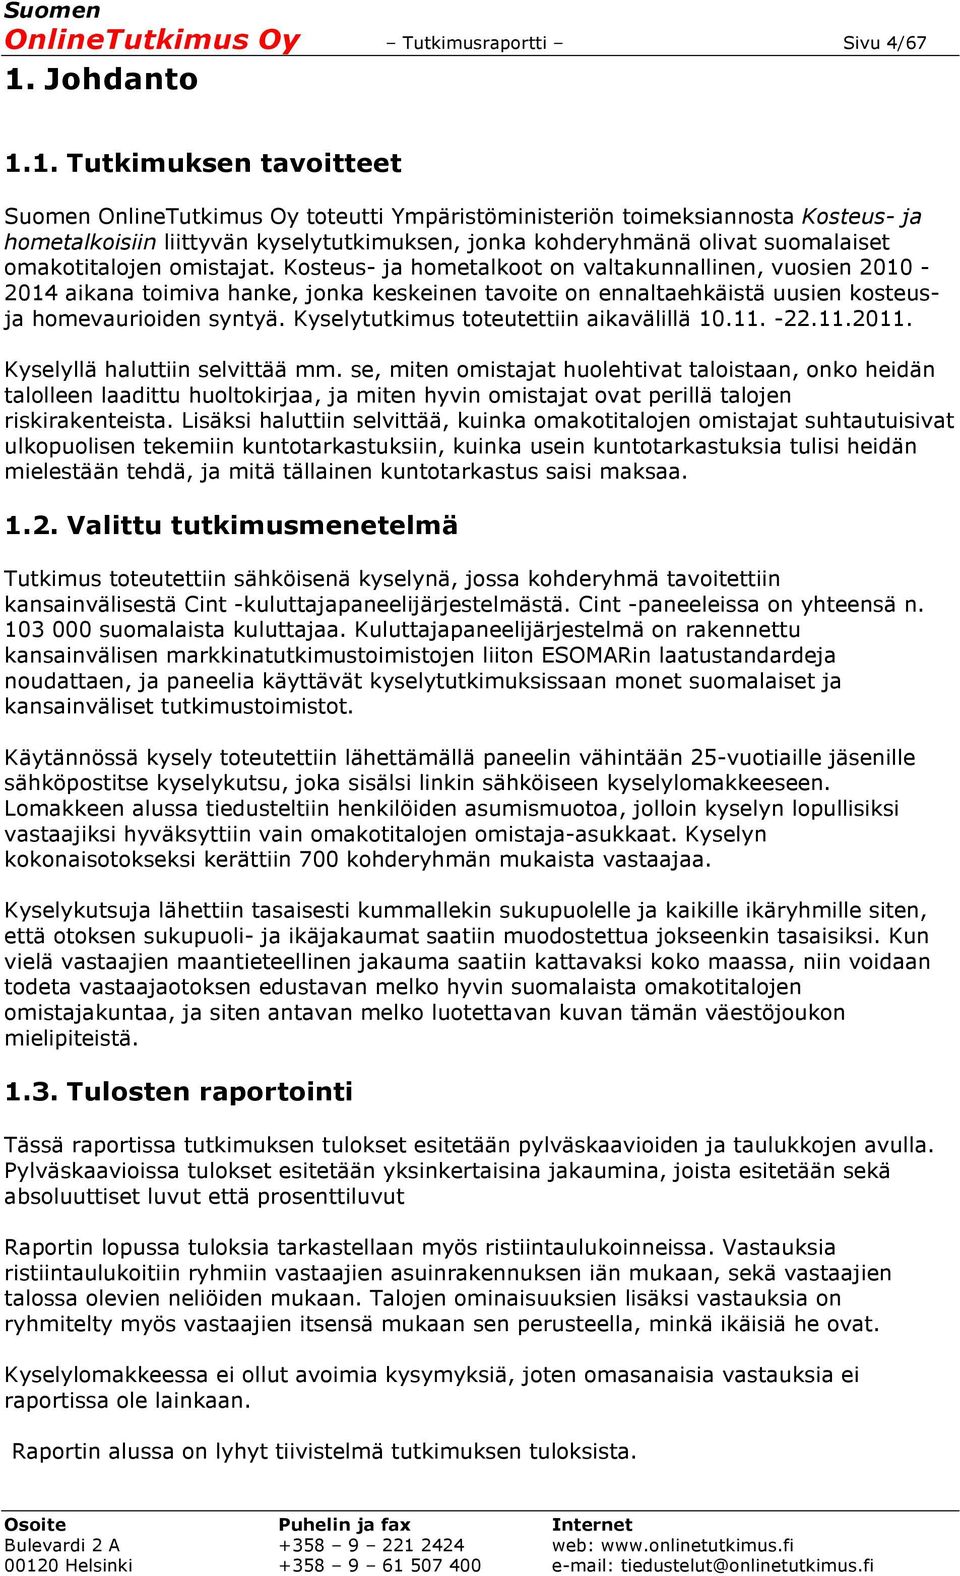 1. Tutkimuksen tavoitteet Suomen OnlineTutkimus Oy toteutti Ympäristöministeriön toimeksiannosta Kosteus- ja hometalkoisiin liittyvän kyselytutkimuksen, jonka kohderyhmänä olivat suomalaiset